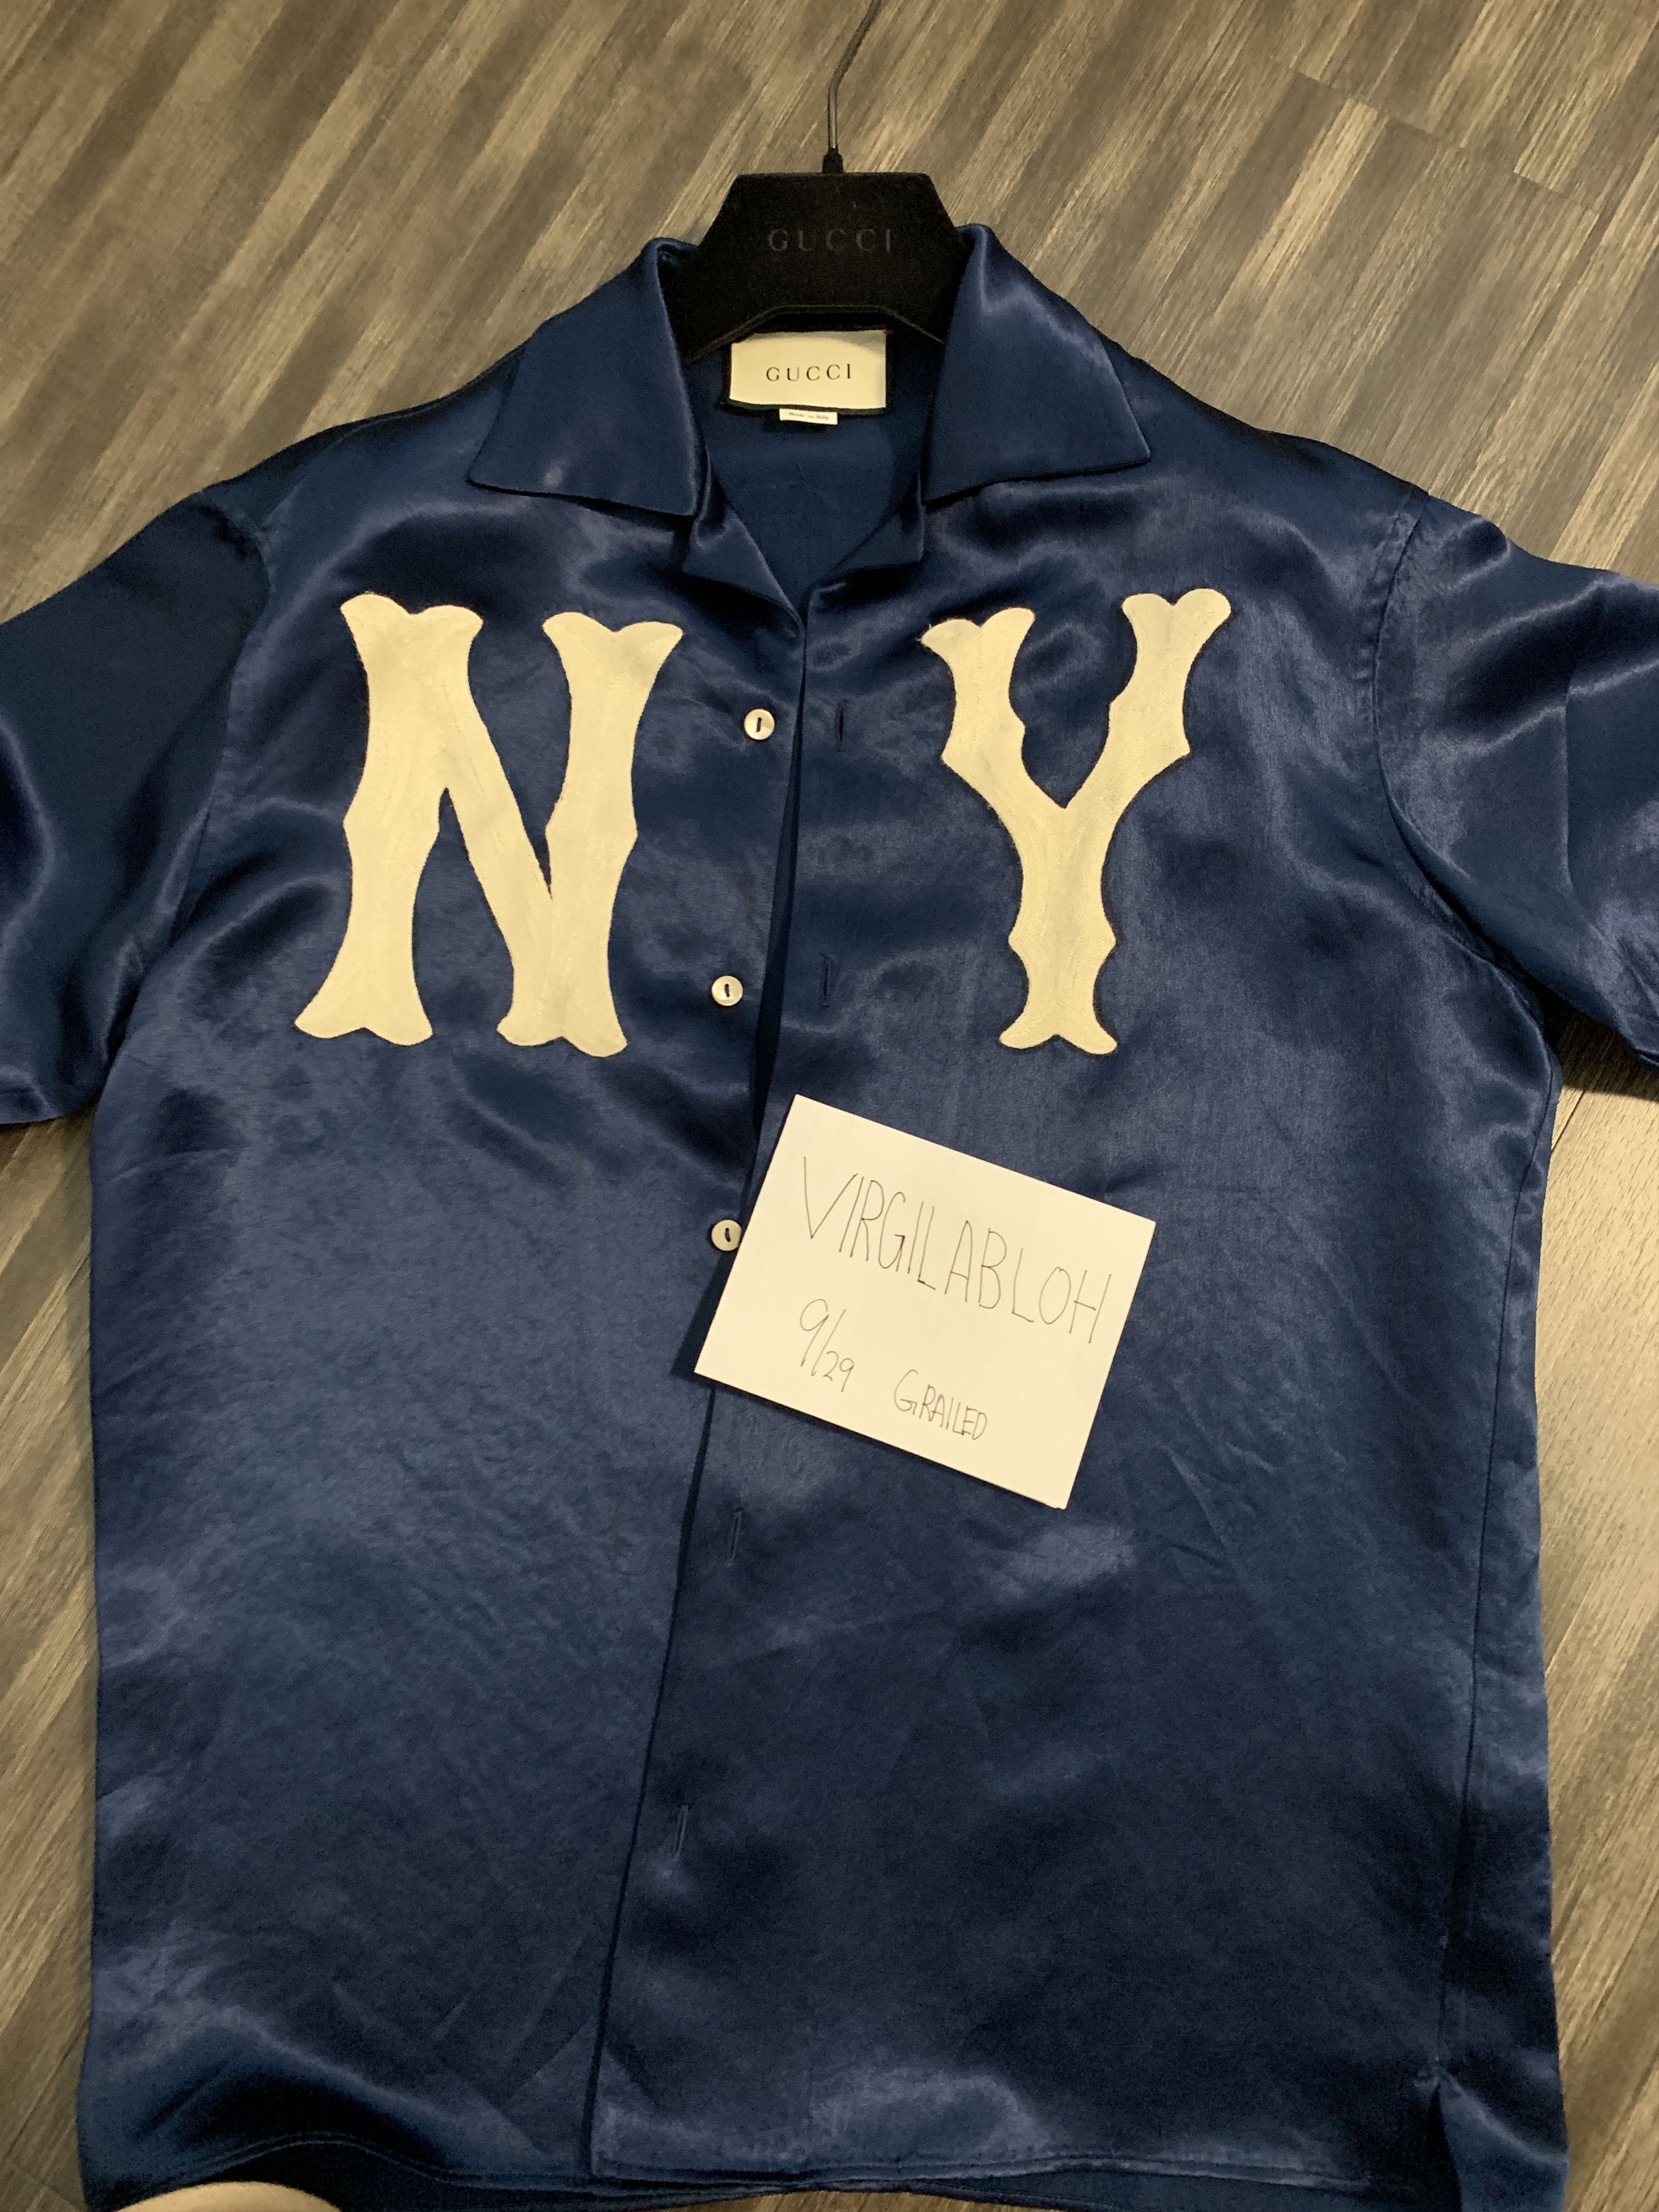 Gucci 2018 NY Yankees Bowling Shirt - Blue Casual Shirts, Clothing -  GUC1295179